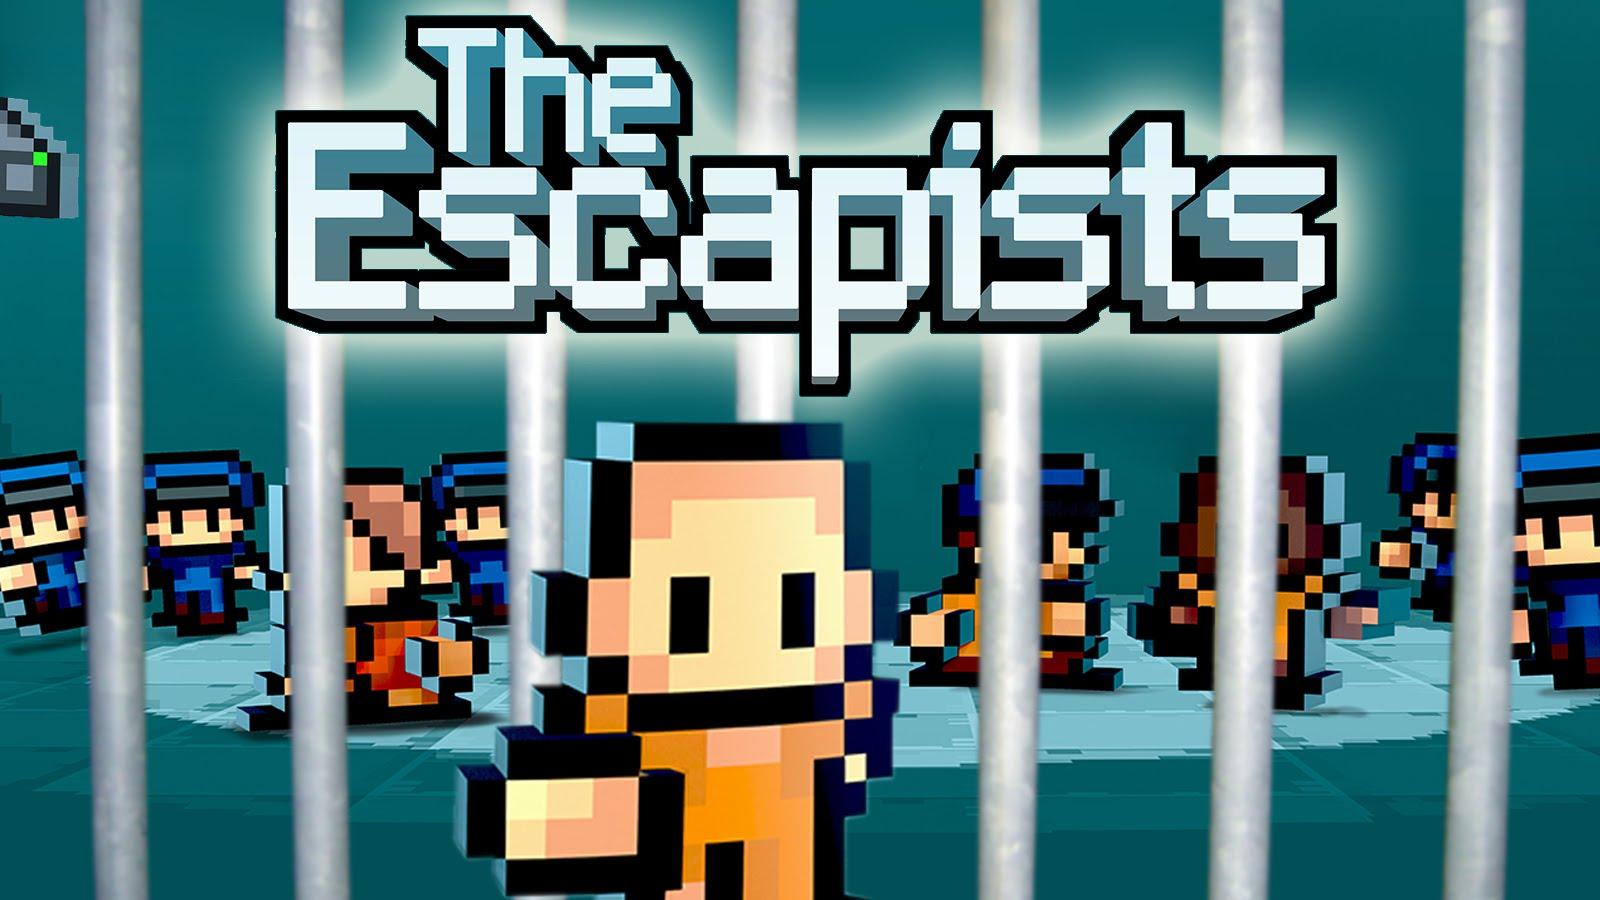 free download the escapist 2 prison